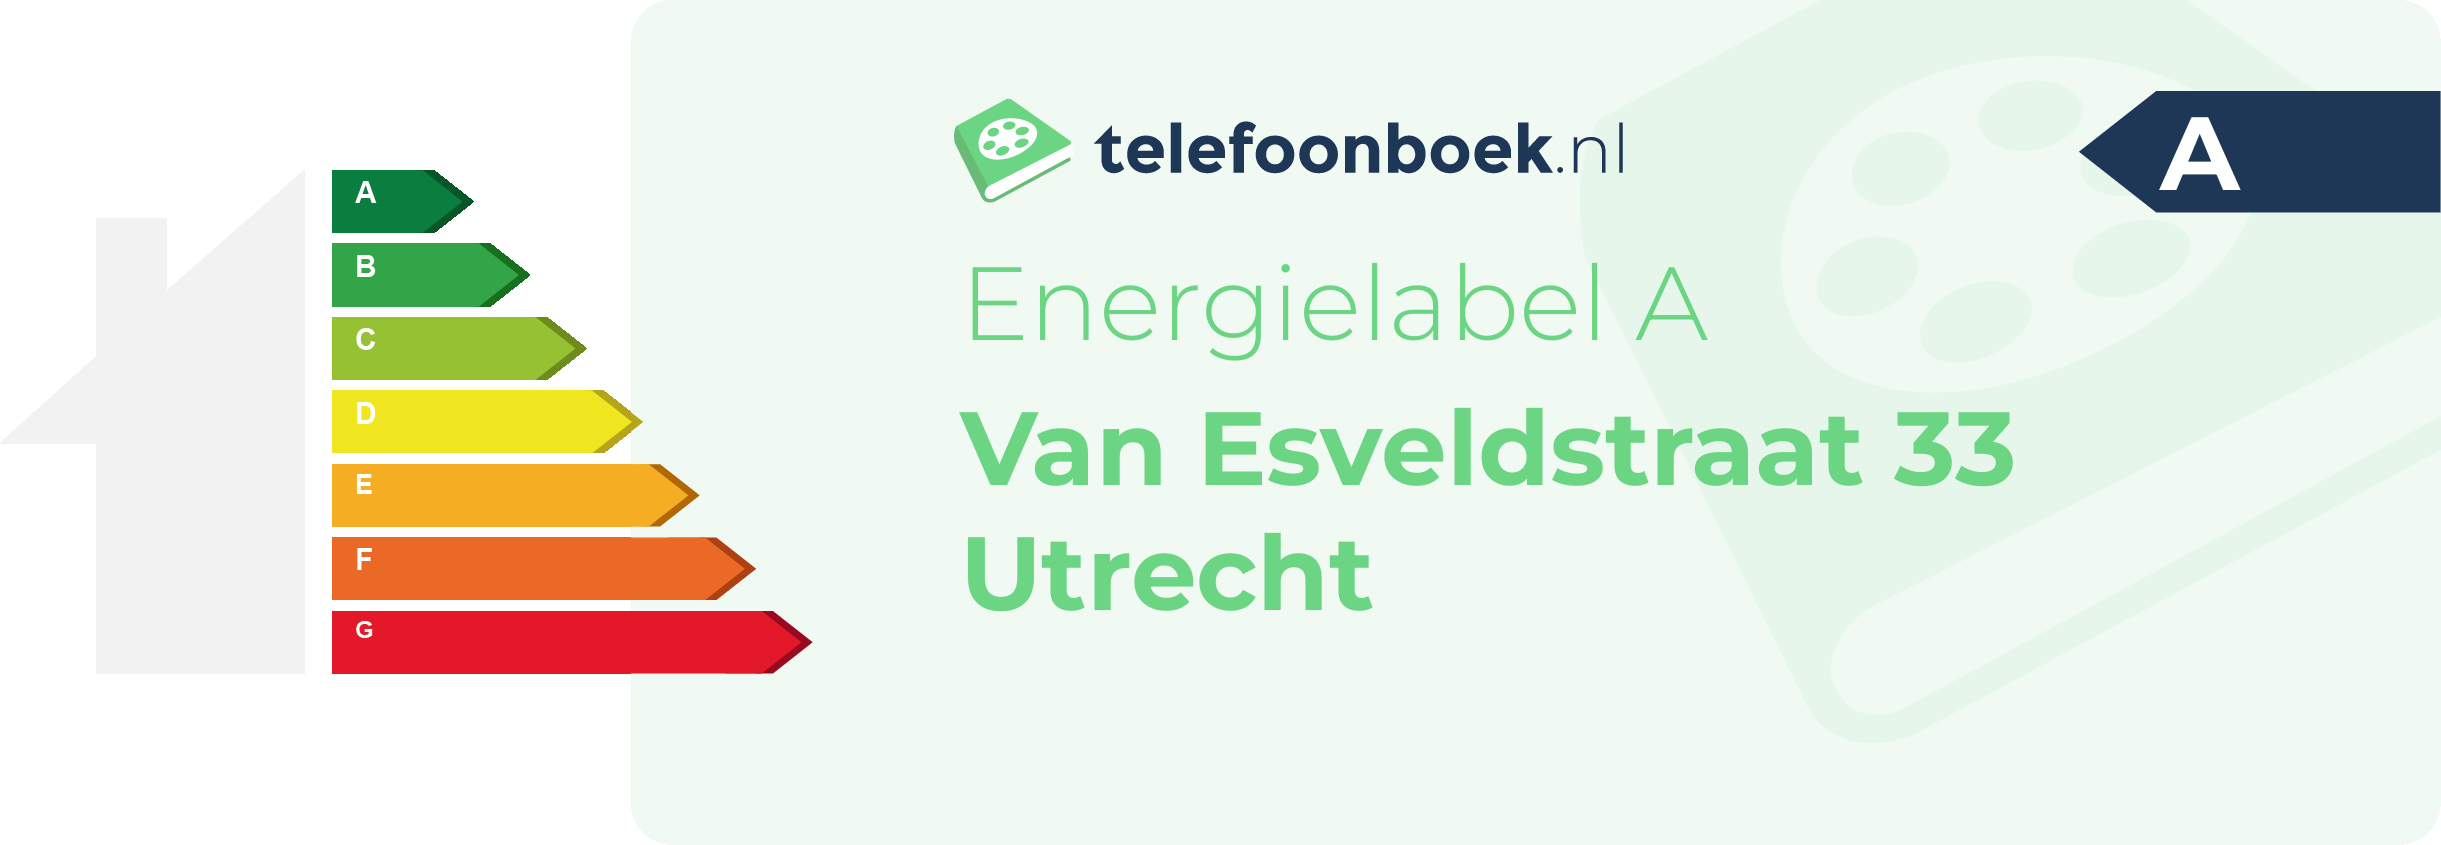 Energielabel Van Esveldstraat 33 Utrecht